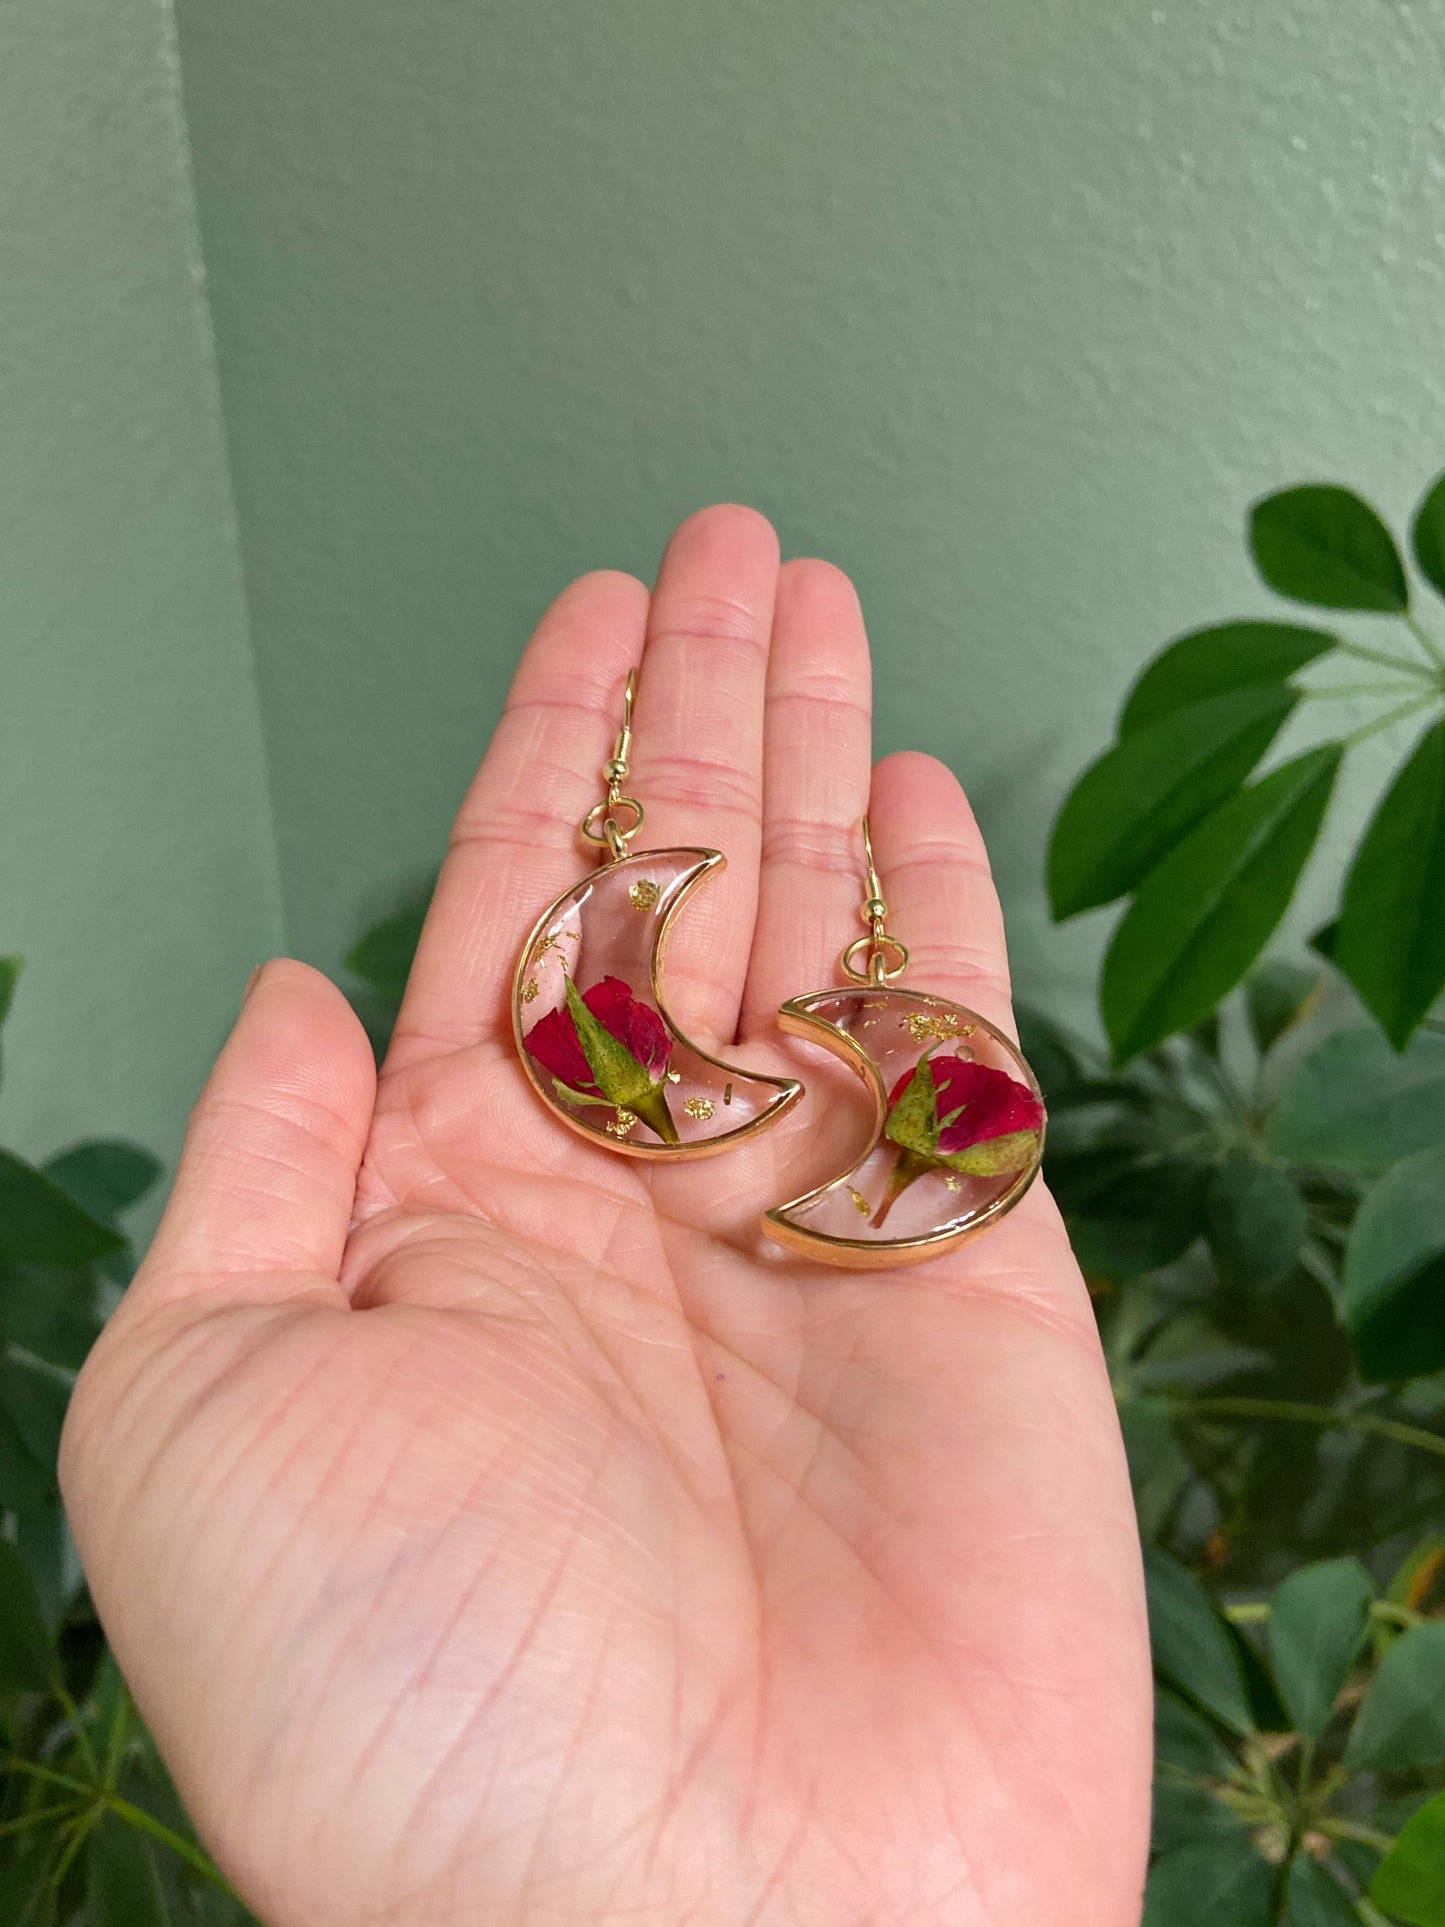 Roses - Red rosebud preserved botanical gold crescent moon earrings